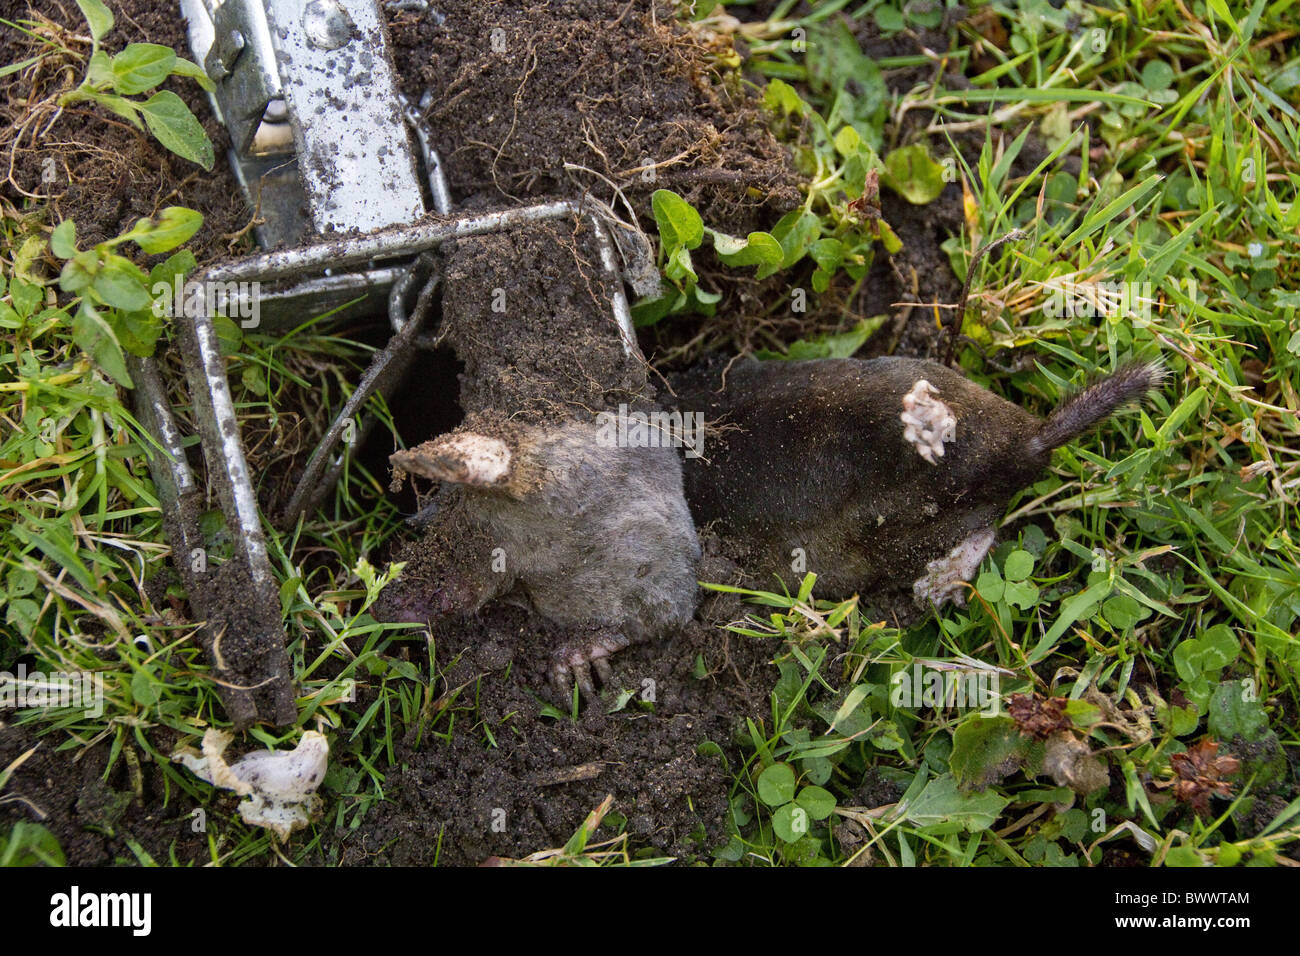 Mole caught in trap Stock Photo